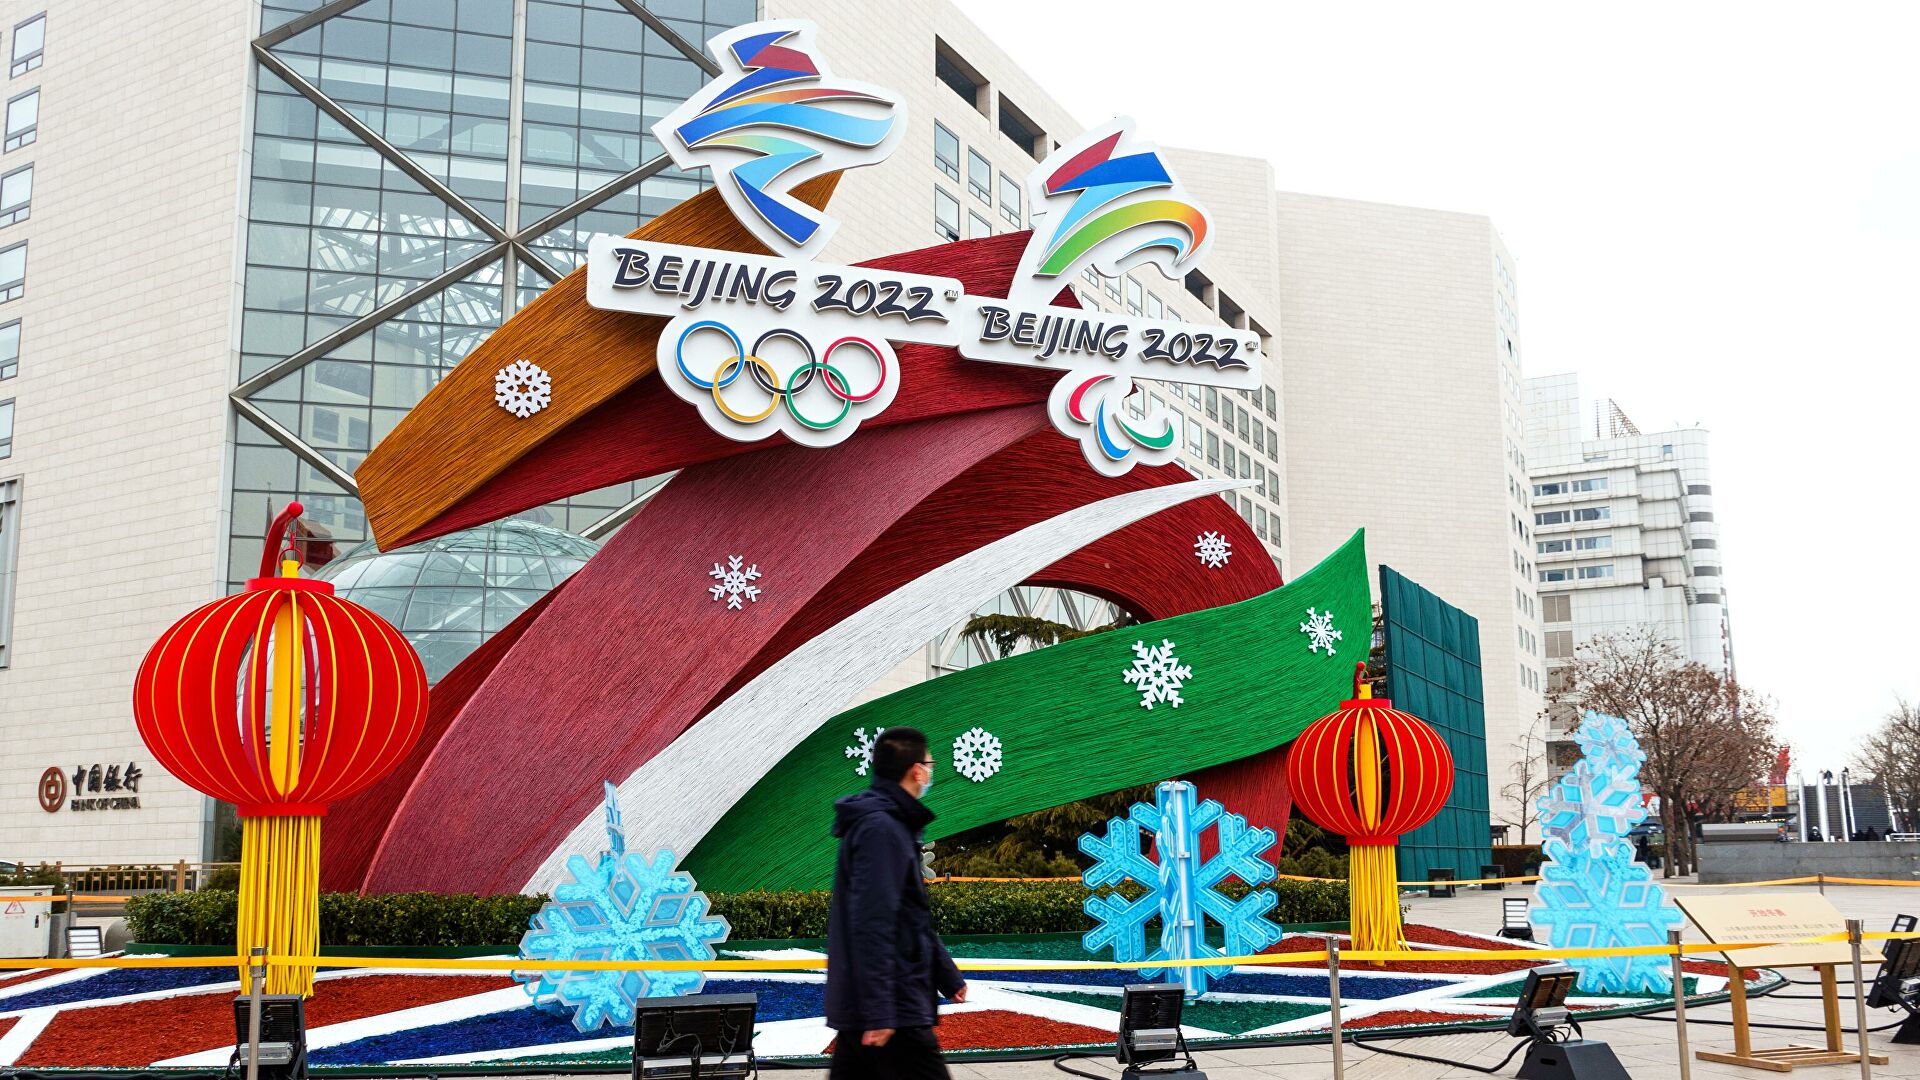 Церемония открытия Олимпийских игр в Пекине пройдет 4 февраля